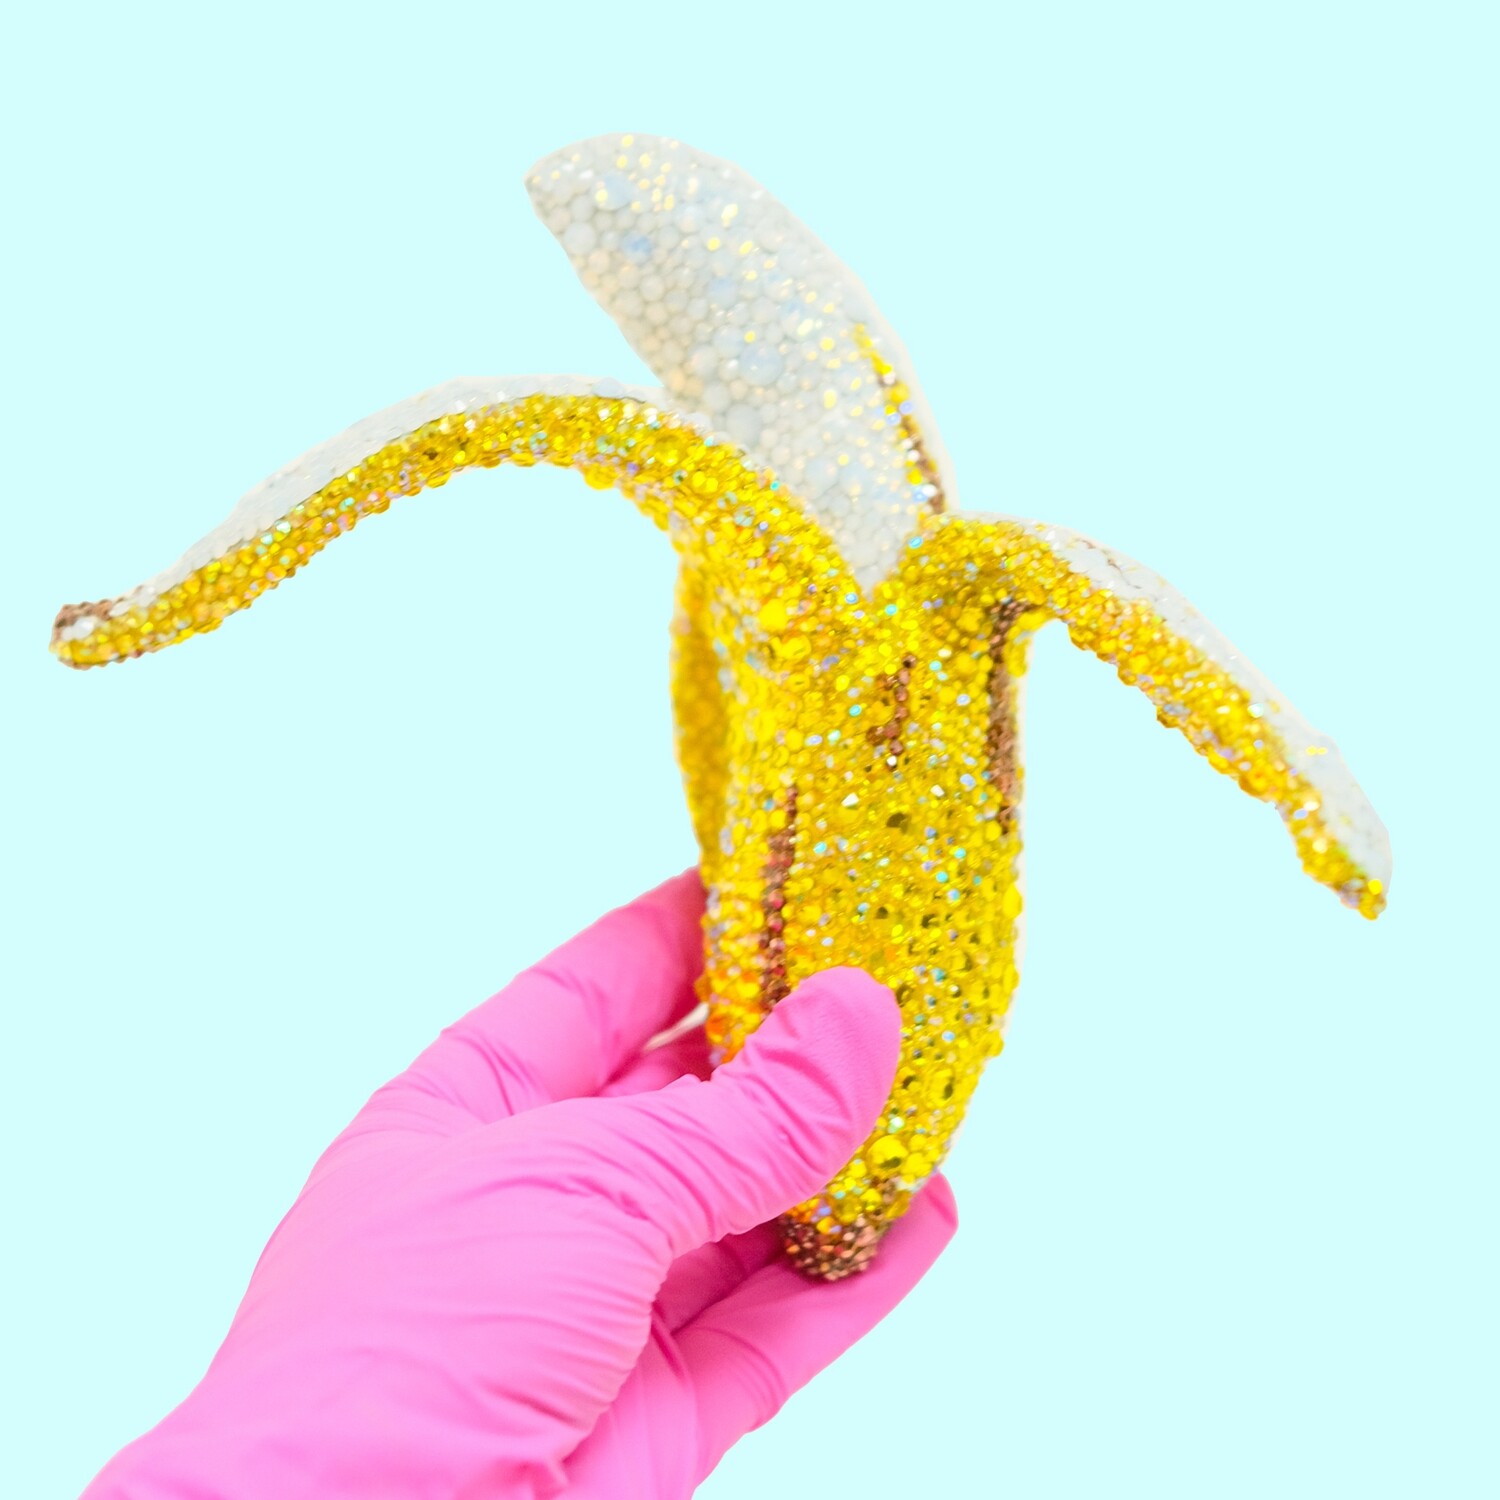 Ripe With Envy - Banana Art - Original Melting Pops